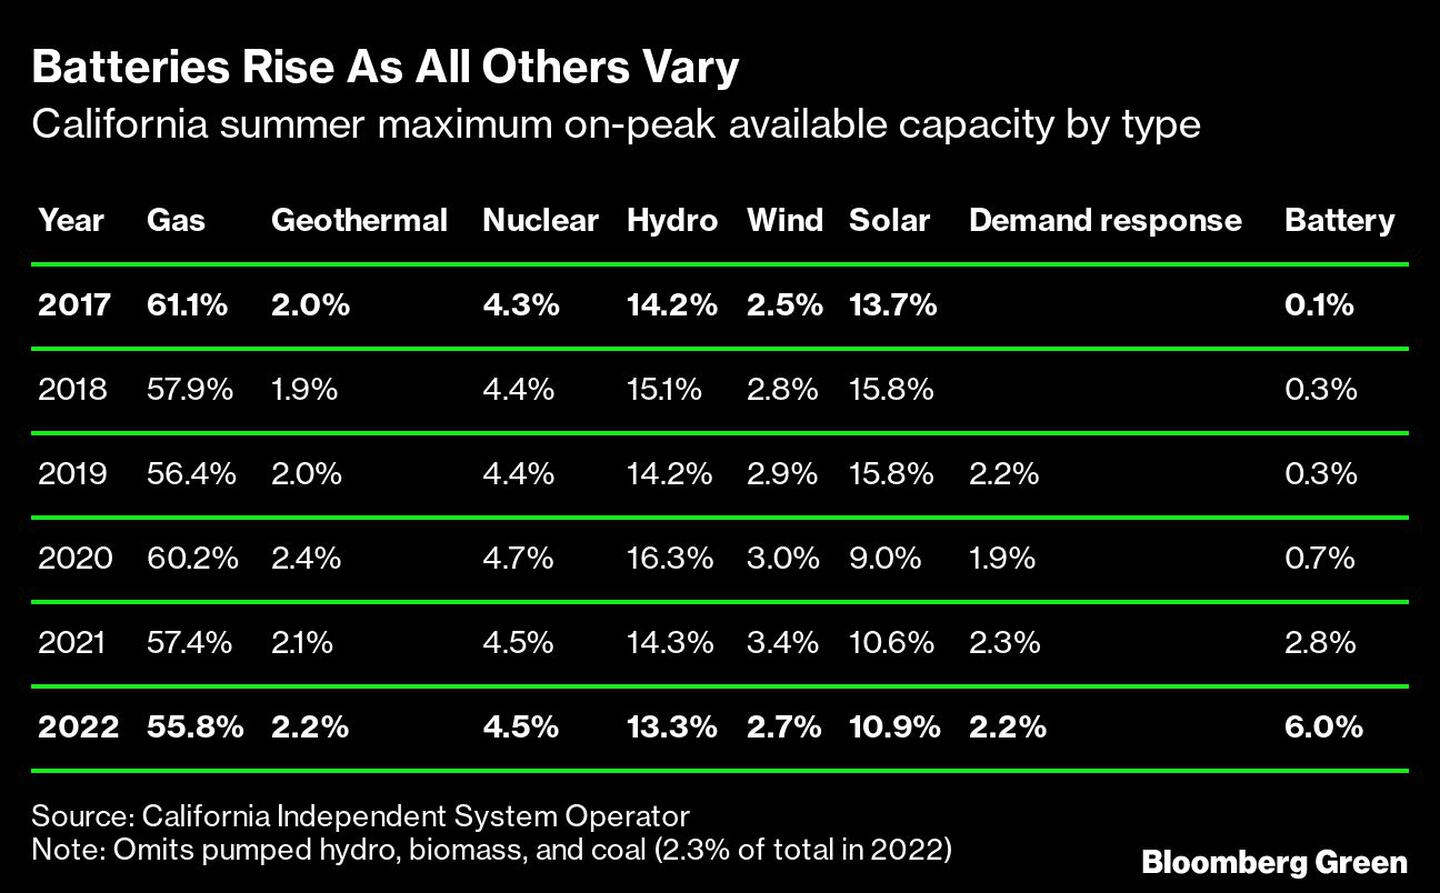 Las baterías aumentan mientras los demás disminuyen
Capacidad máxima disponible en verano en California por tipo de energía
De izquierda a derecha: Año, Gas, Geotérmica, Nuclear, Hidroeléctrica, Eólica, Solar, Respuesta a la demanda, Bateríadfd